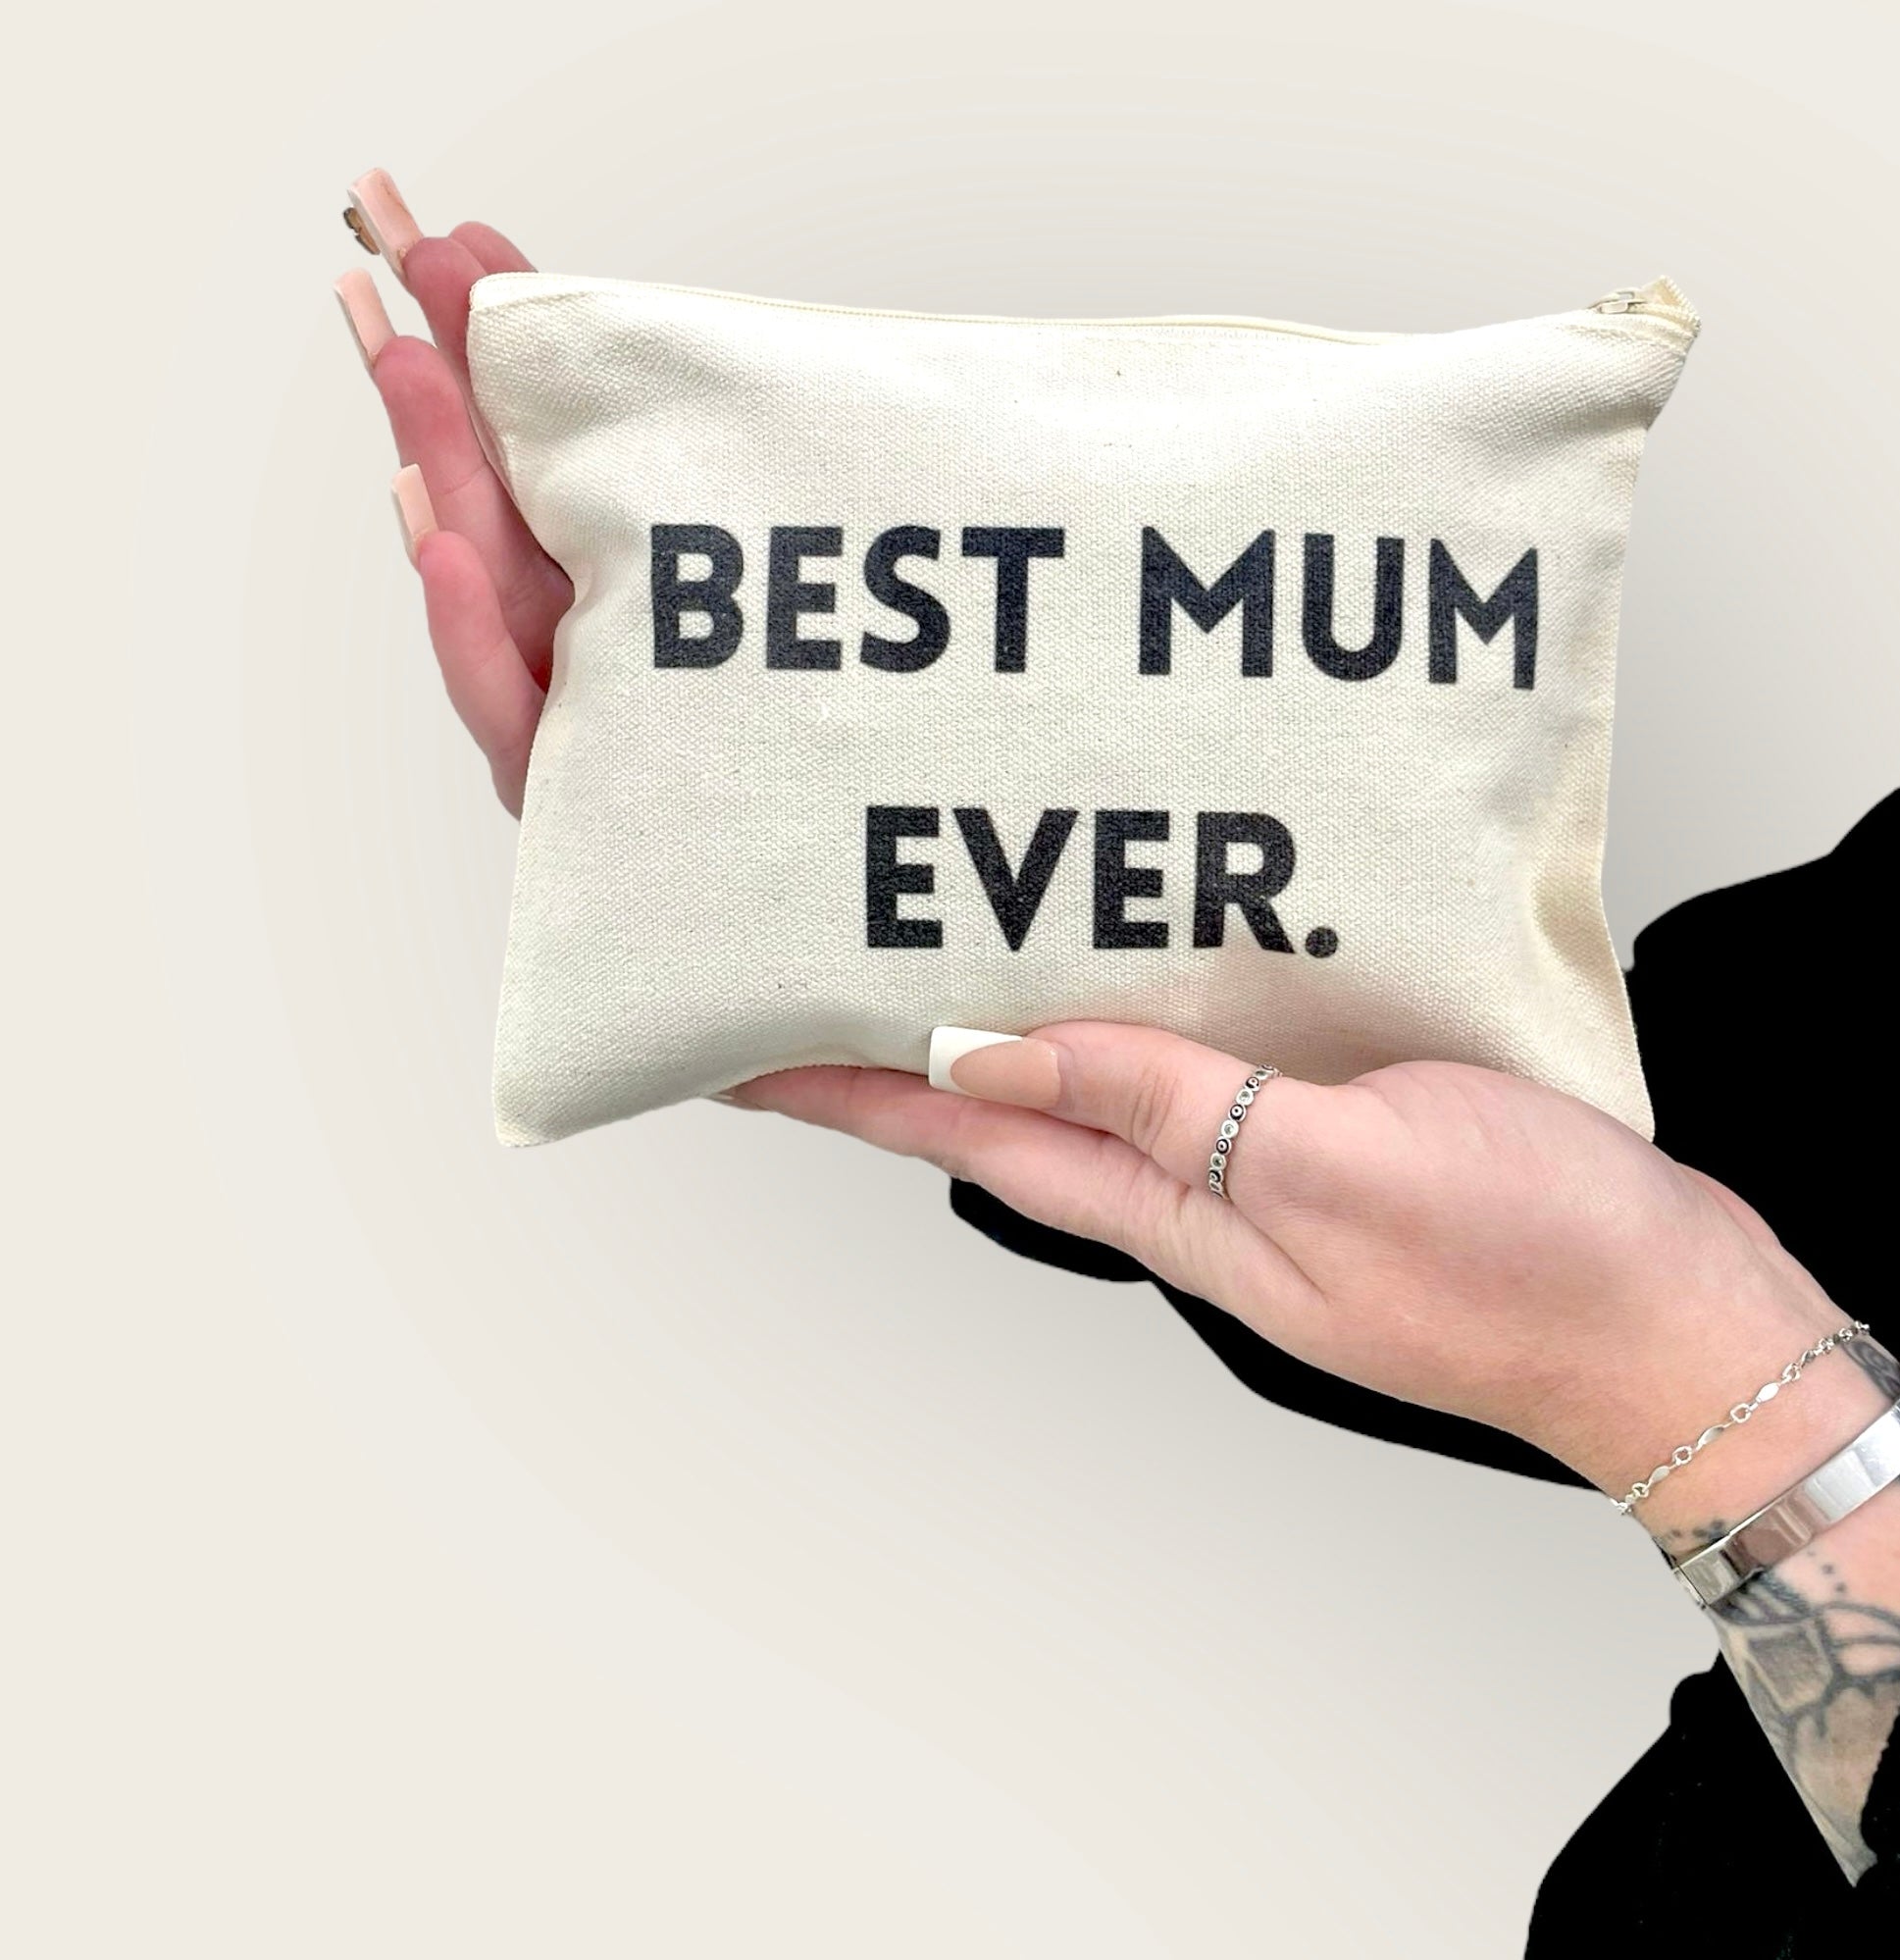 Best mum ever canvas zipper bag